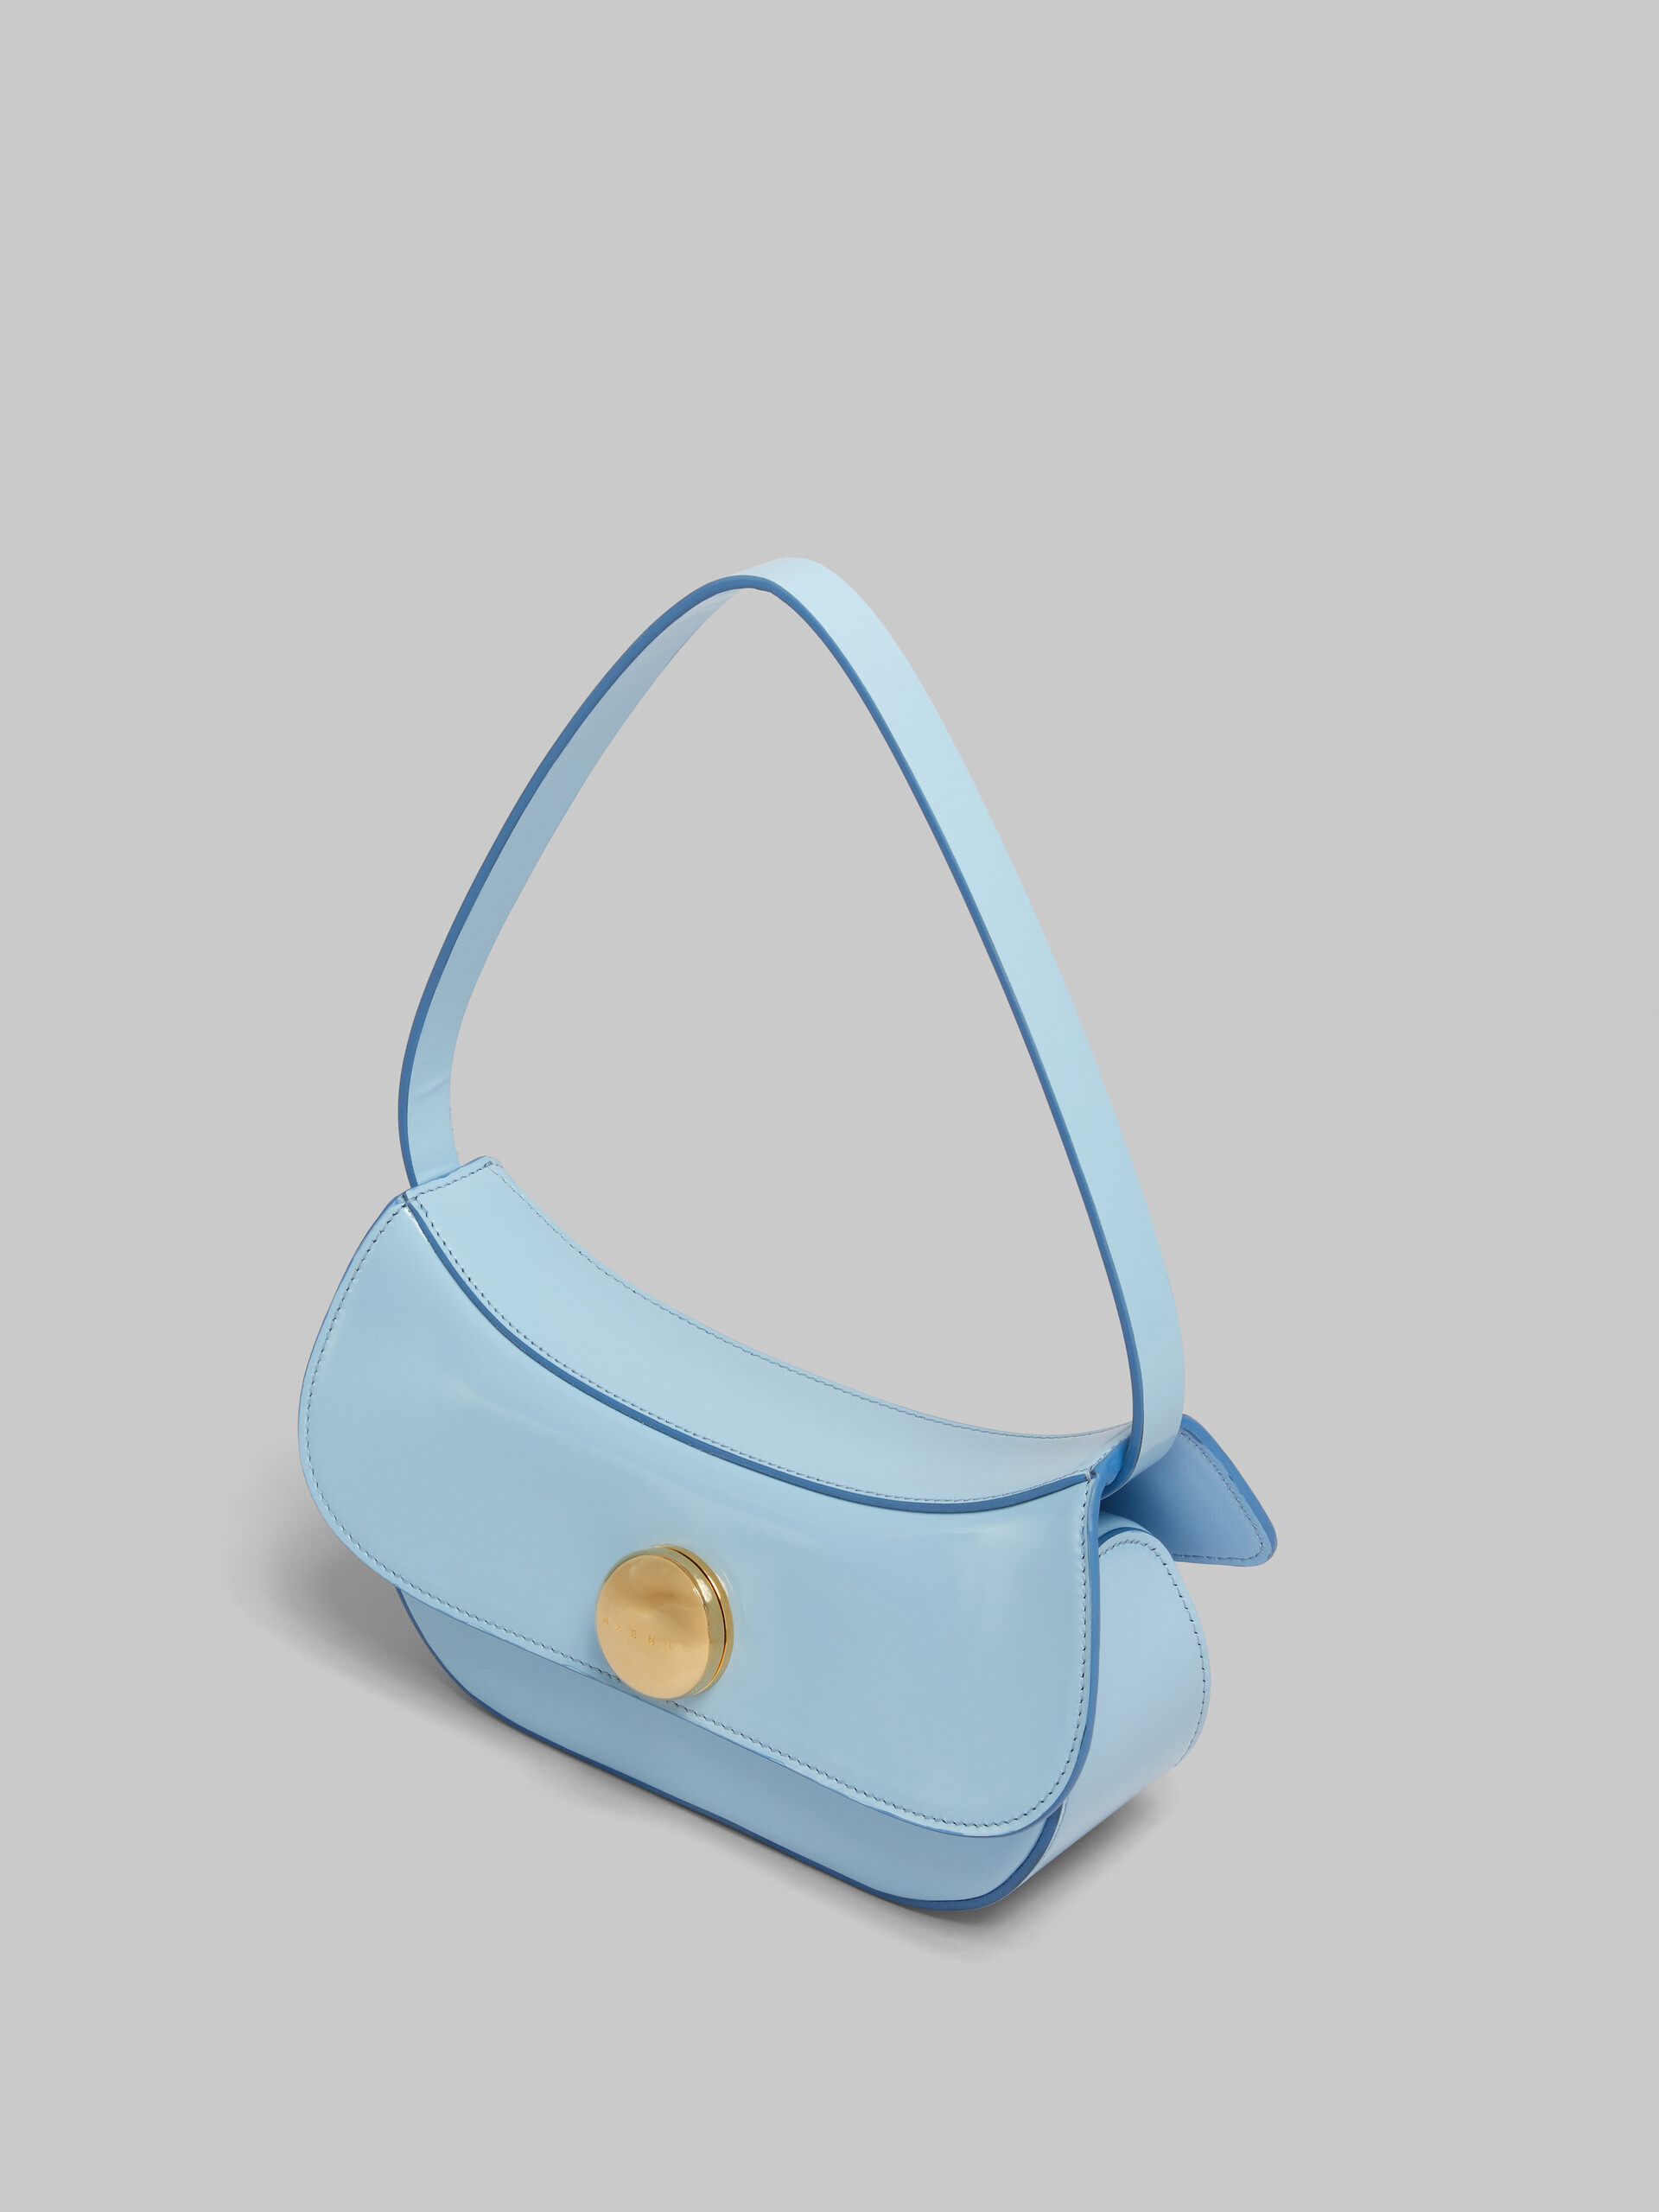 Petit sac Hobo Butterfly en cuir bleu - Sacs portés épaule - Image 5